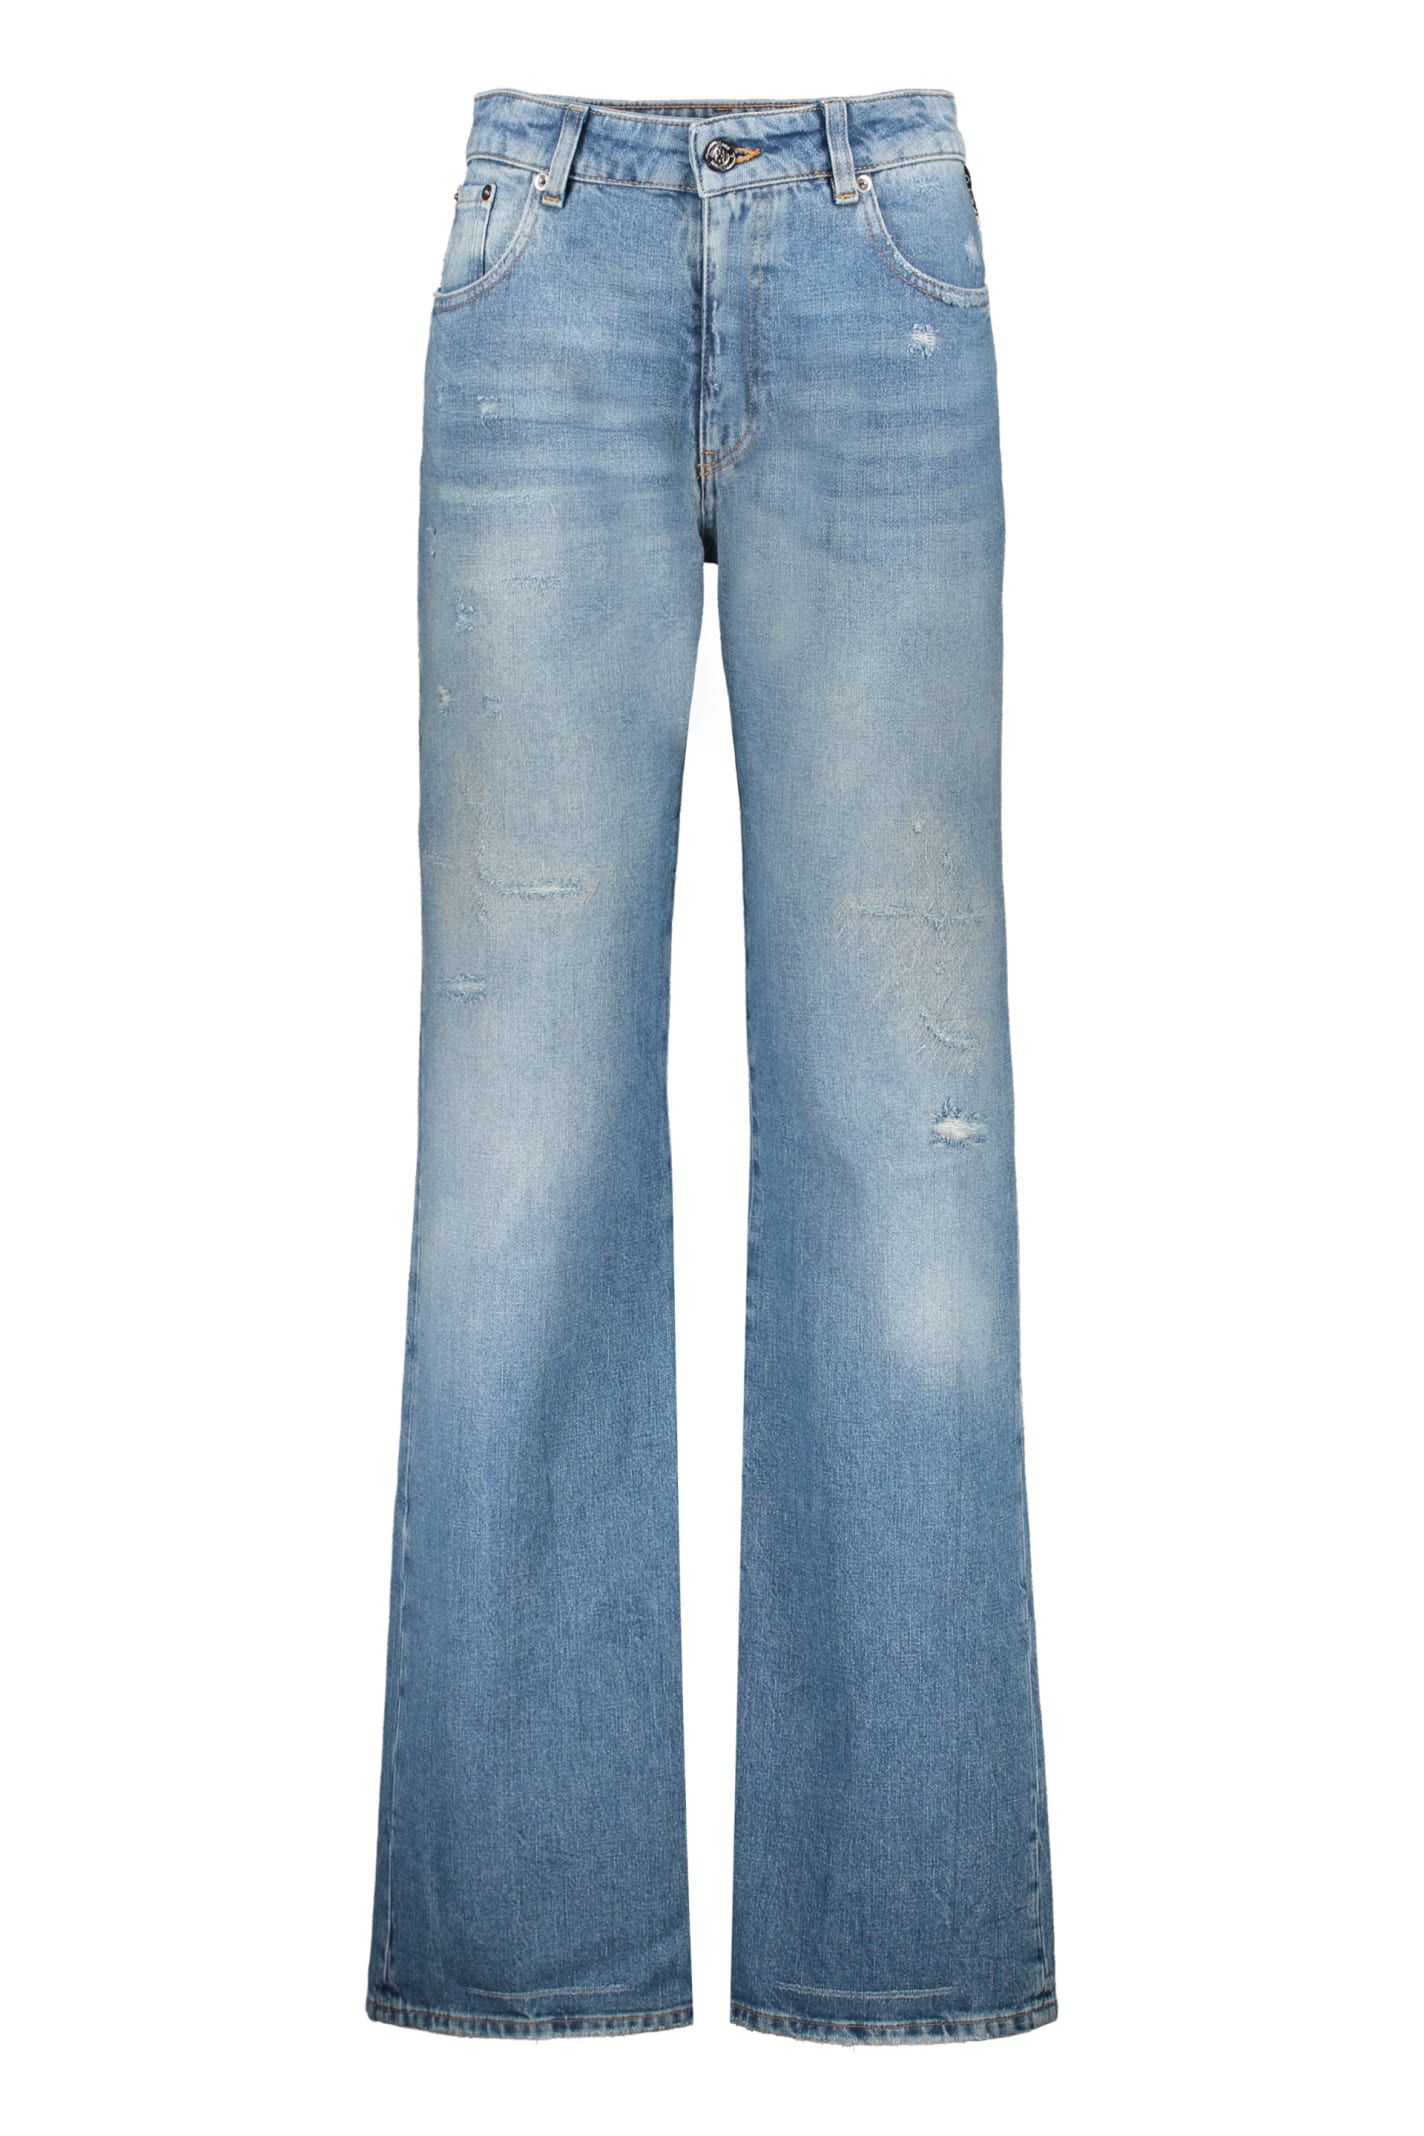 Missoni 5-pocket Jeans In Denim